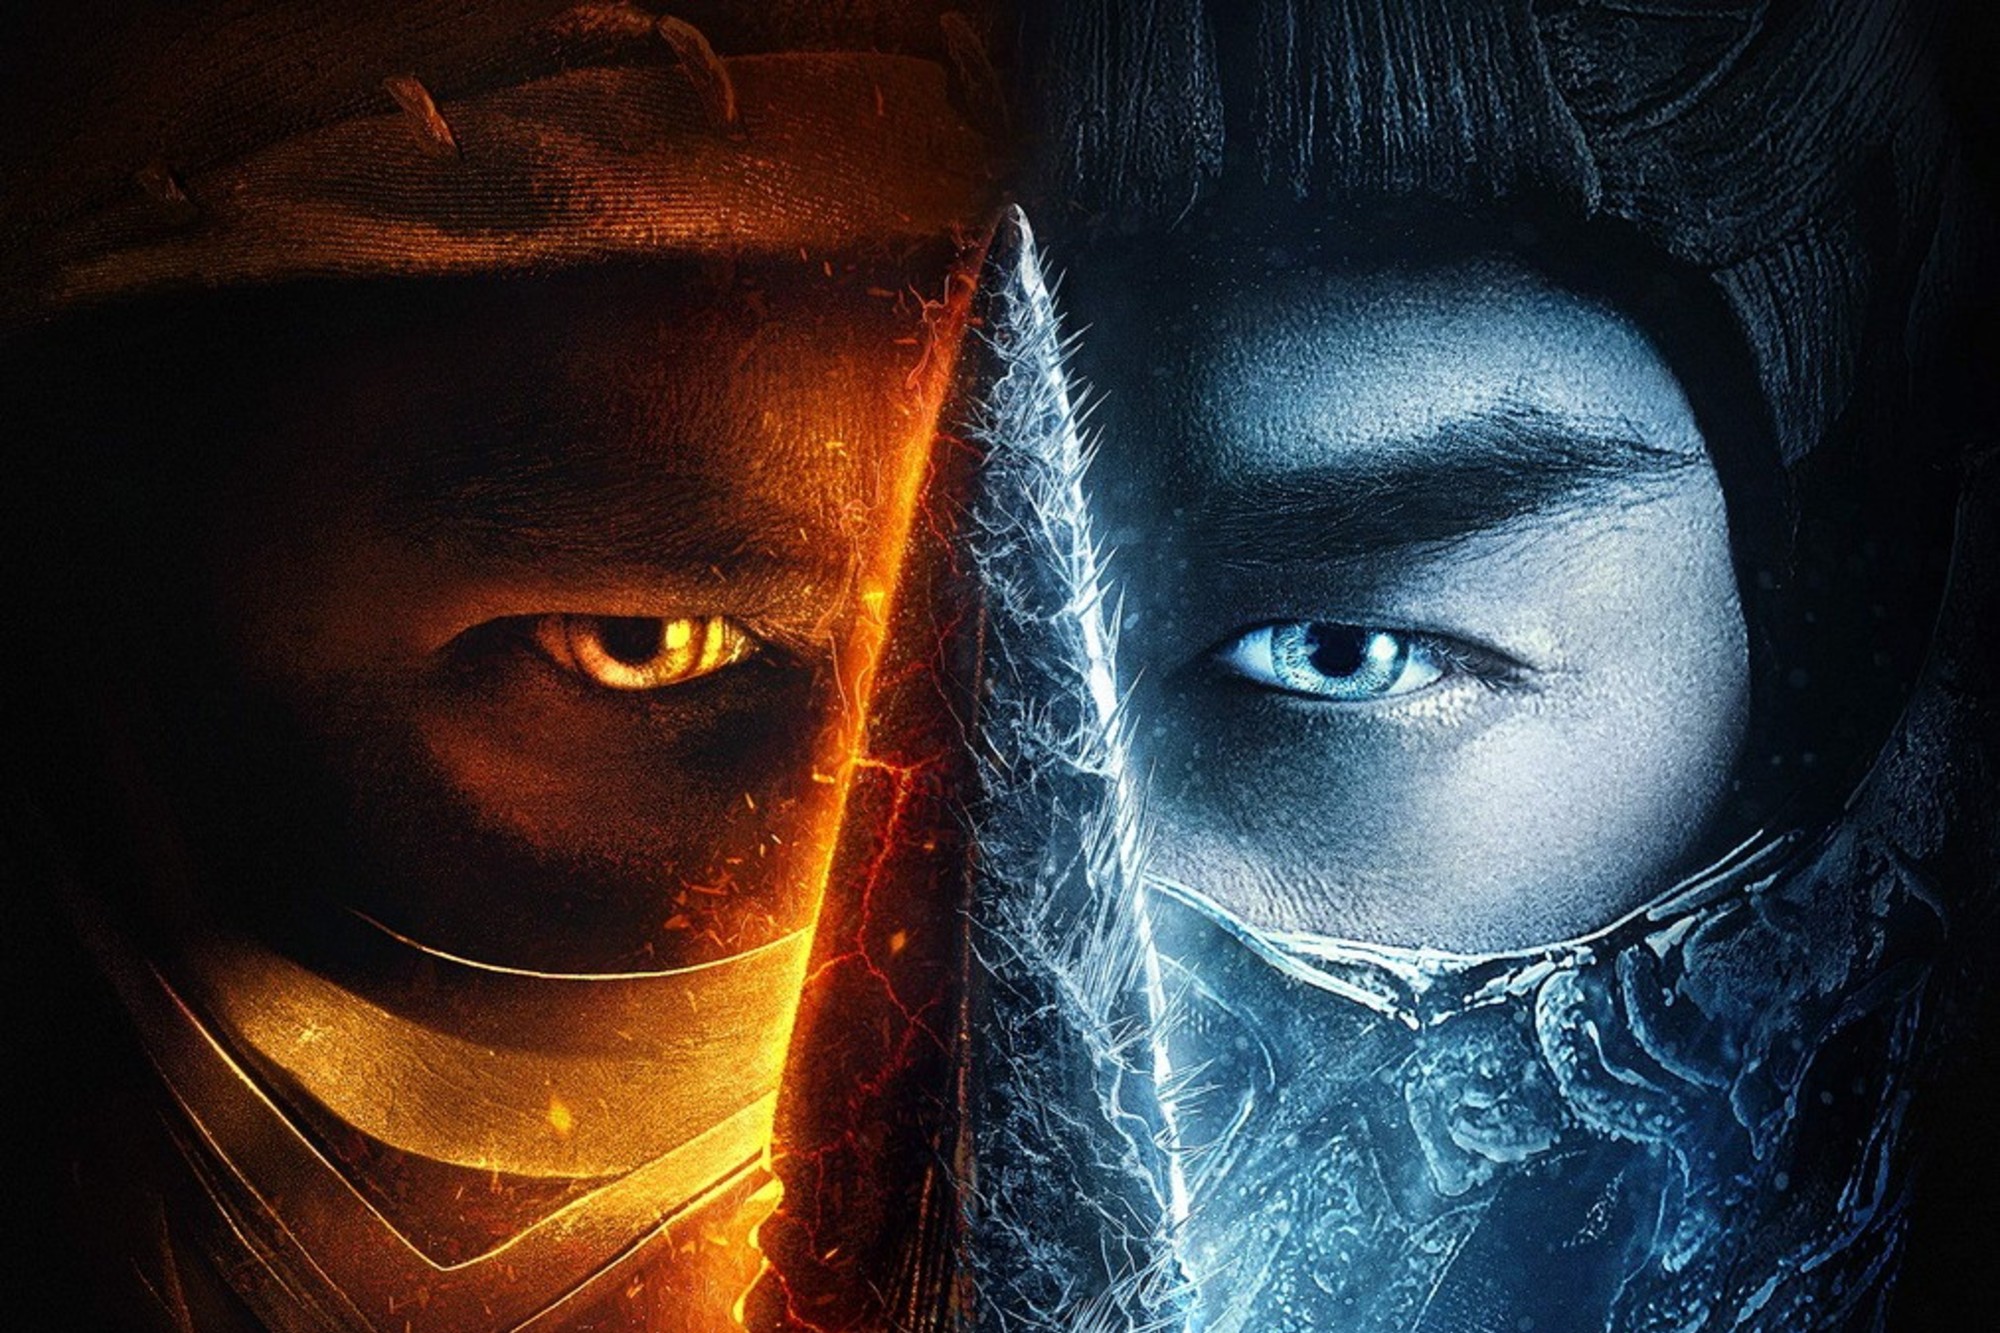 Aperte o play! Lançamento de “Mortal Kombat” dá tom de nostalgia ao fim de  semana - Forbes